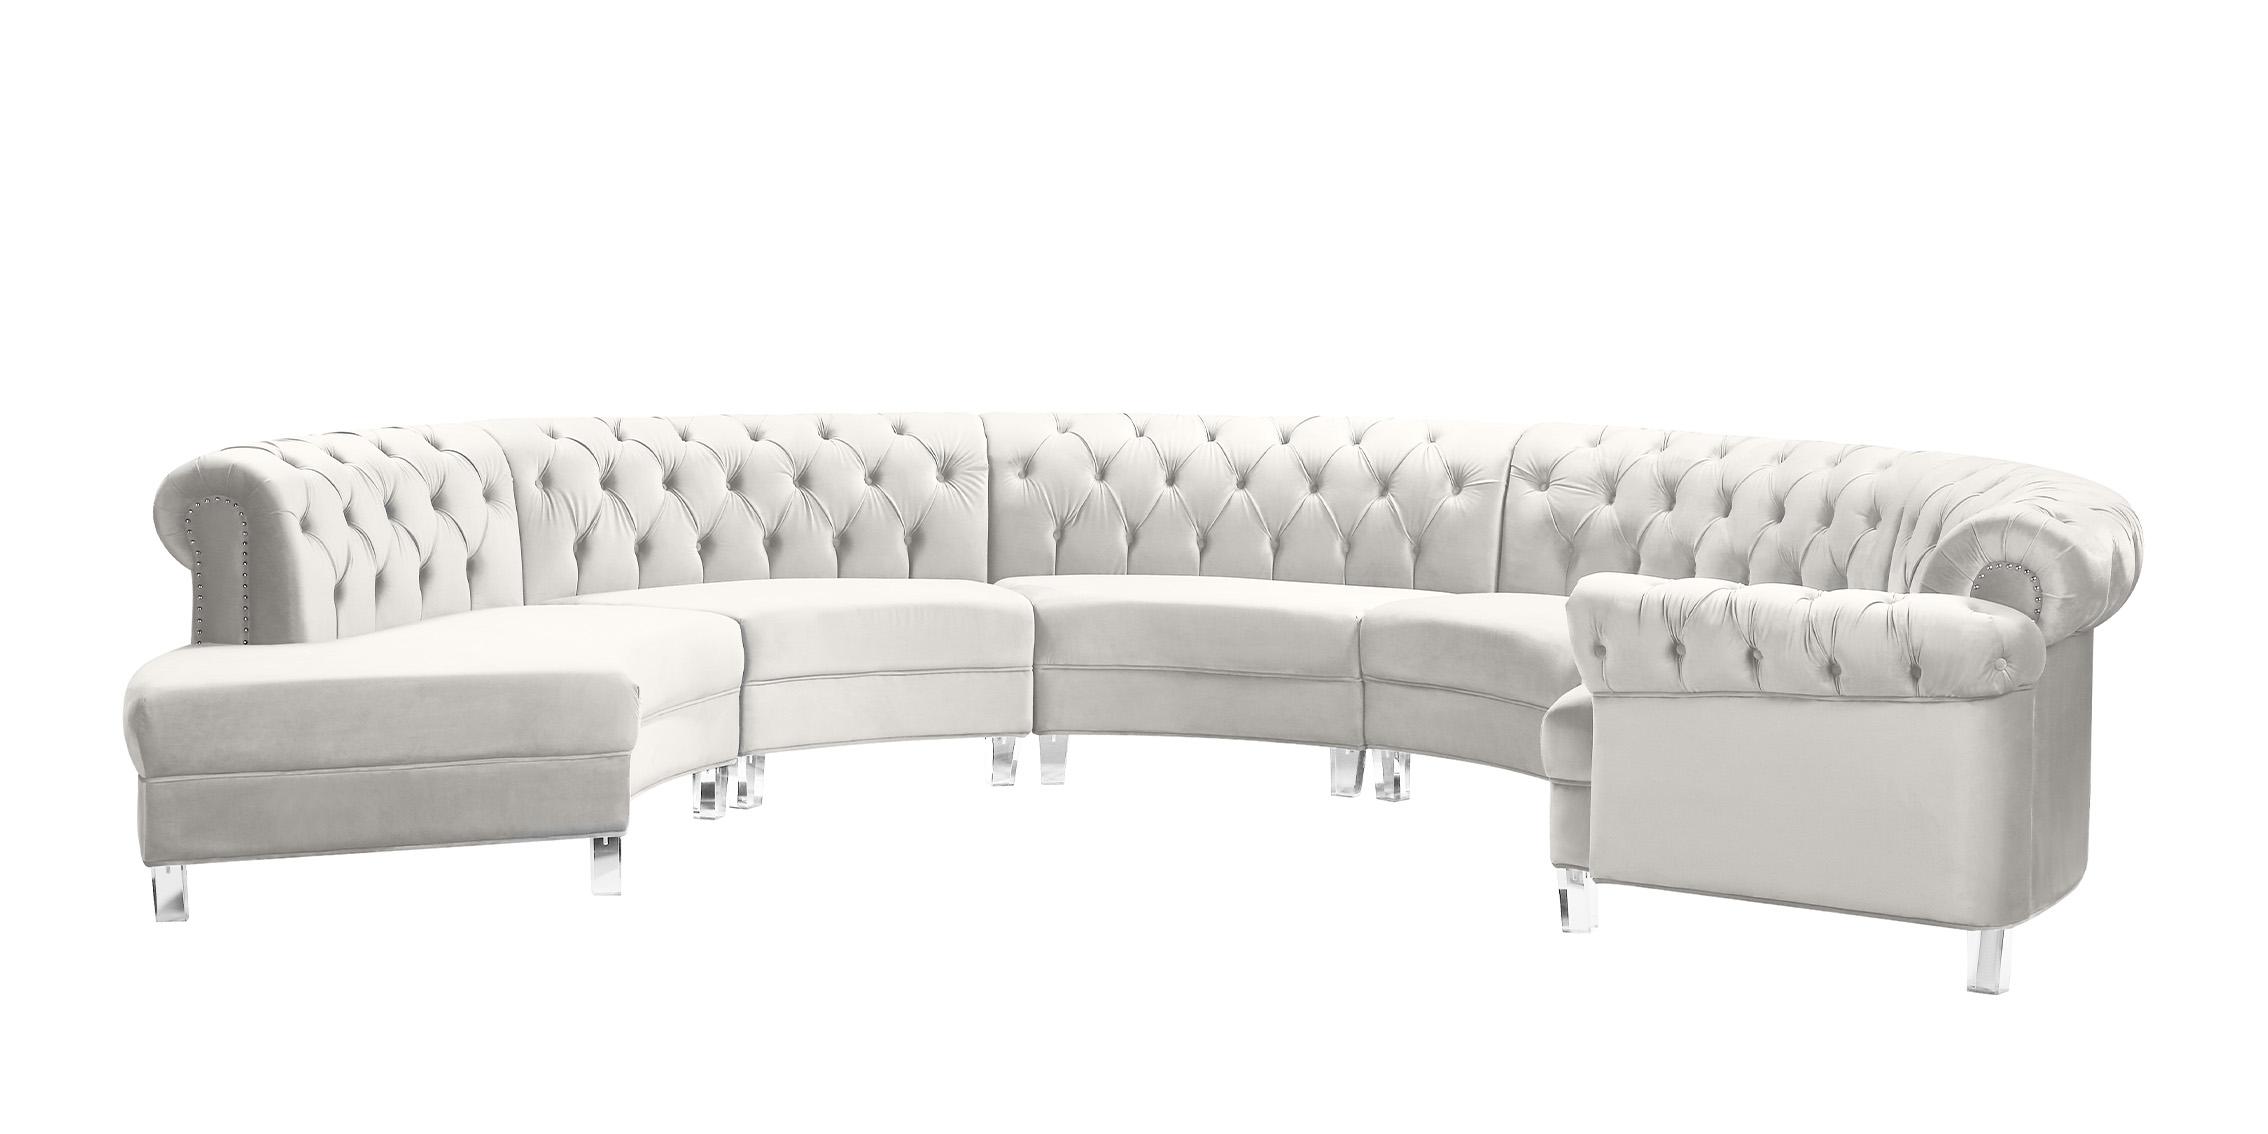 

    
Meridian Furniture ANABELLA 697Cream-5 Sectional Sofa Cream 697Cream-Sec-5PC
